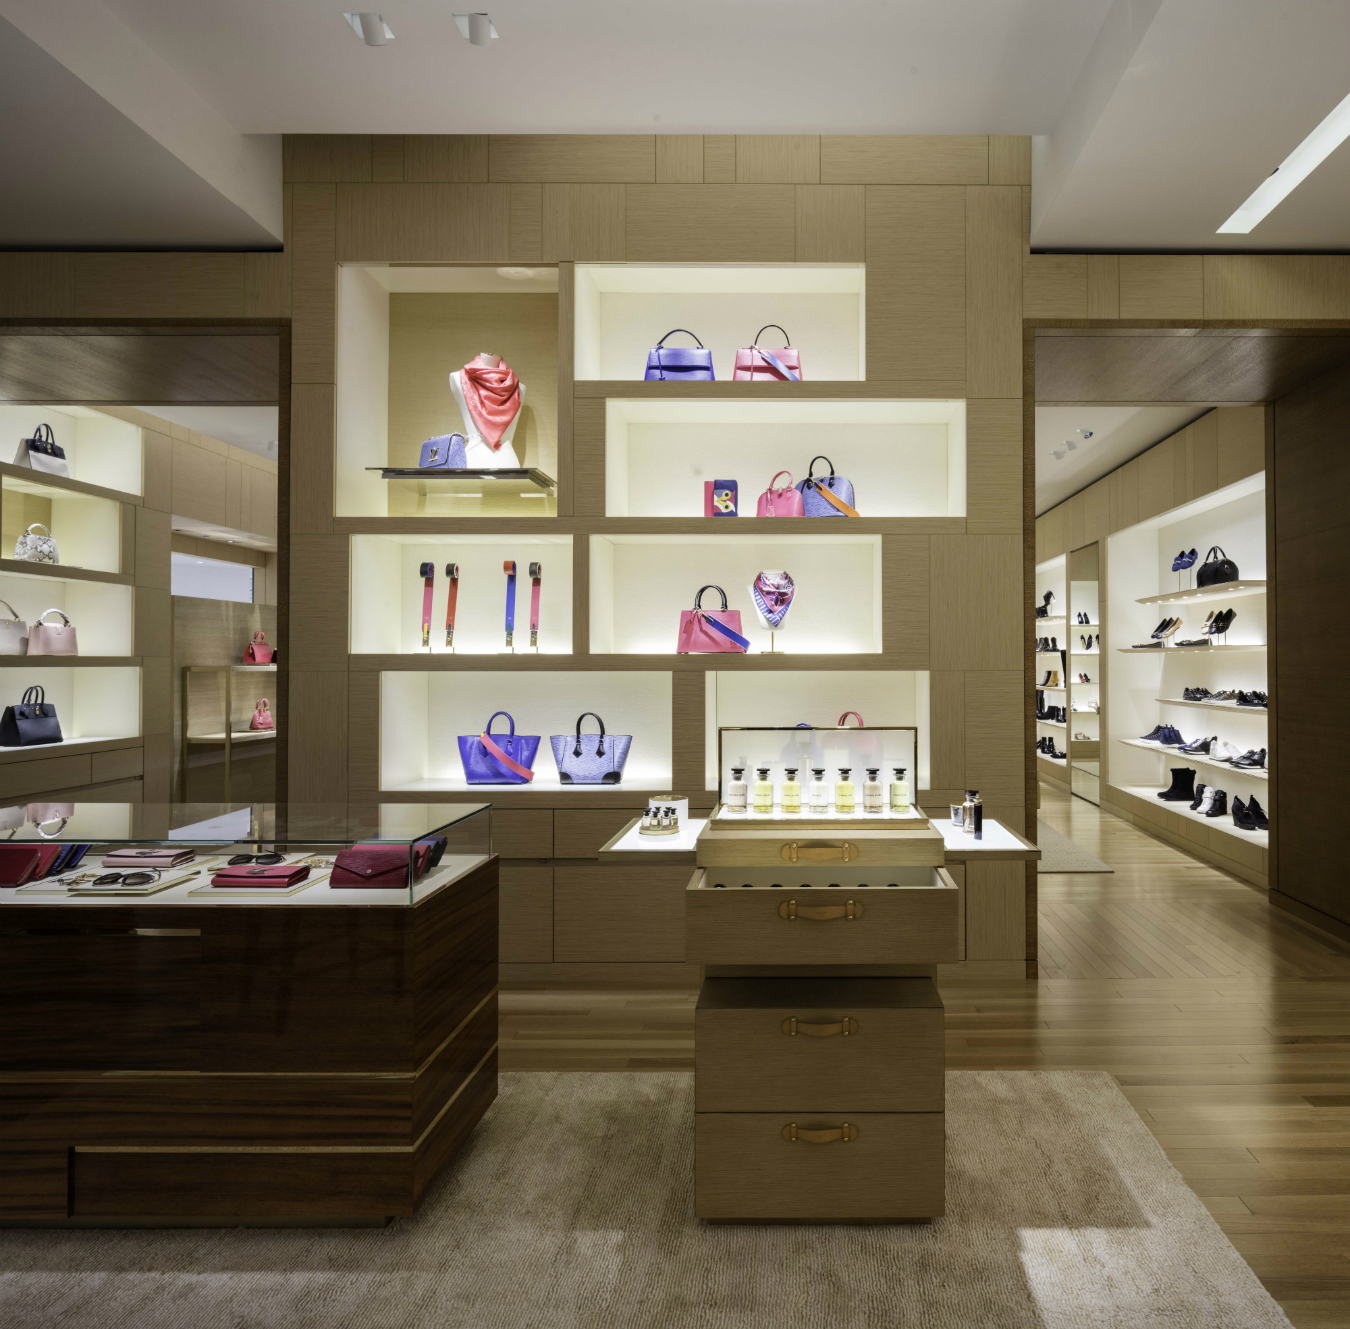 Louis Vuitton Holt Renfrew Vancouver | MONTECRISTO